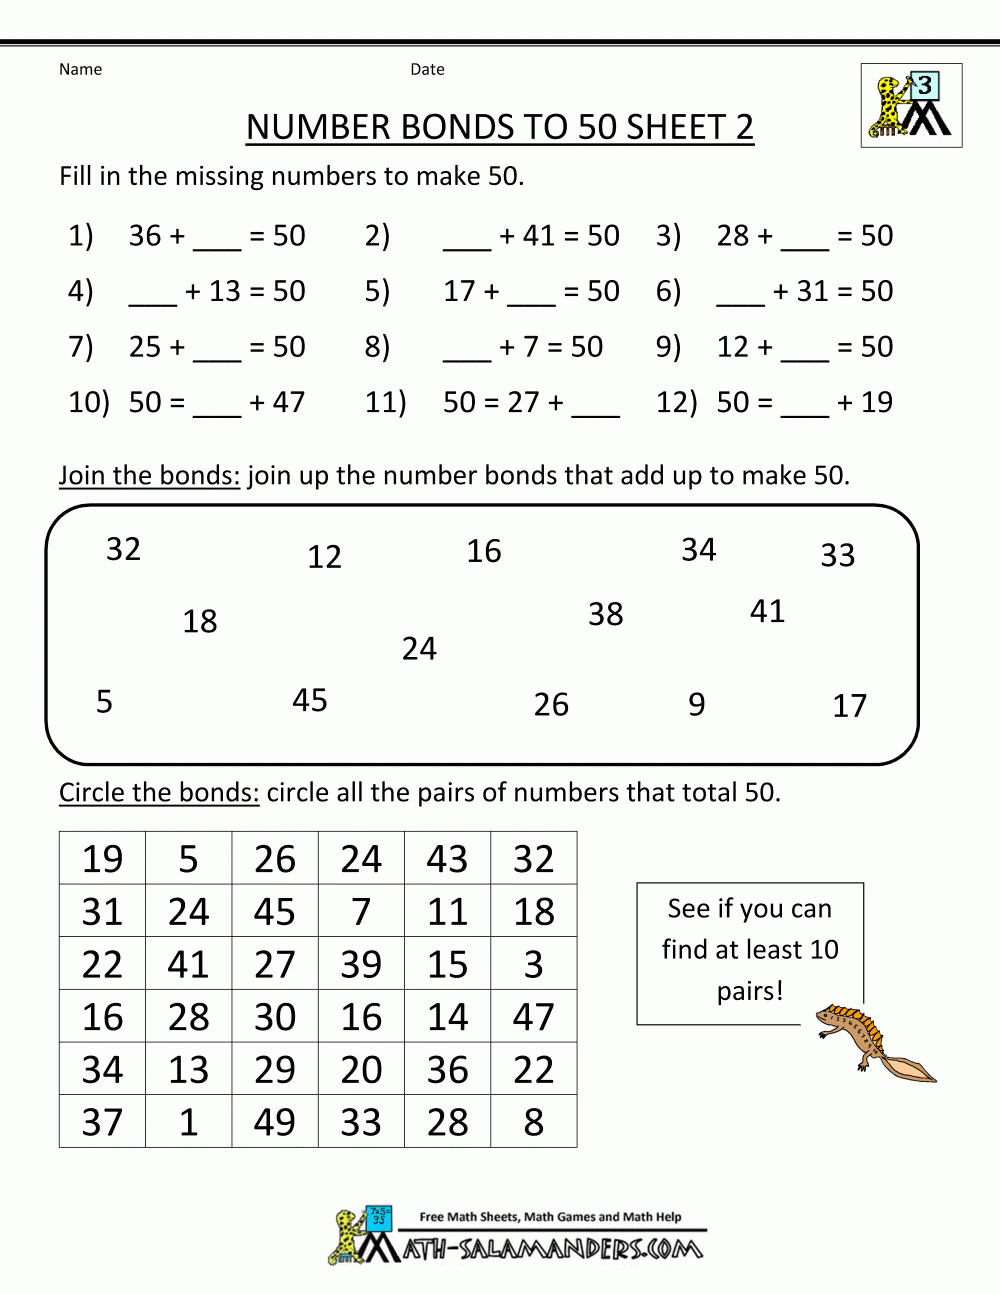 Free Printable Math Worksheets Number Bonds To 50 2 | Education - Free Printable Number Bonds Worksheets For Kindergarten